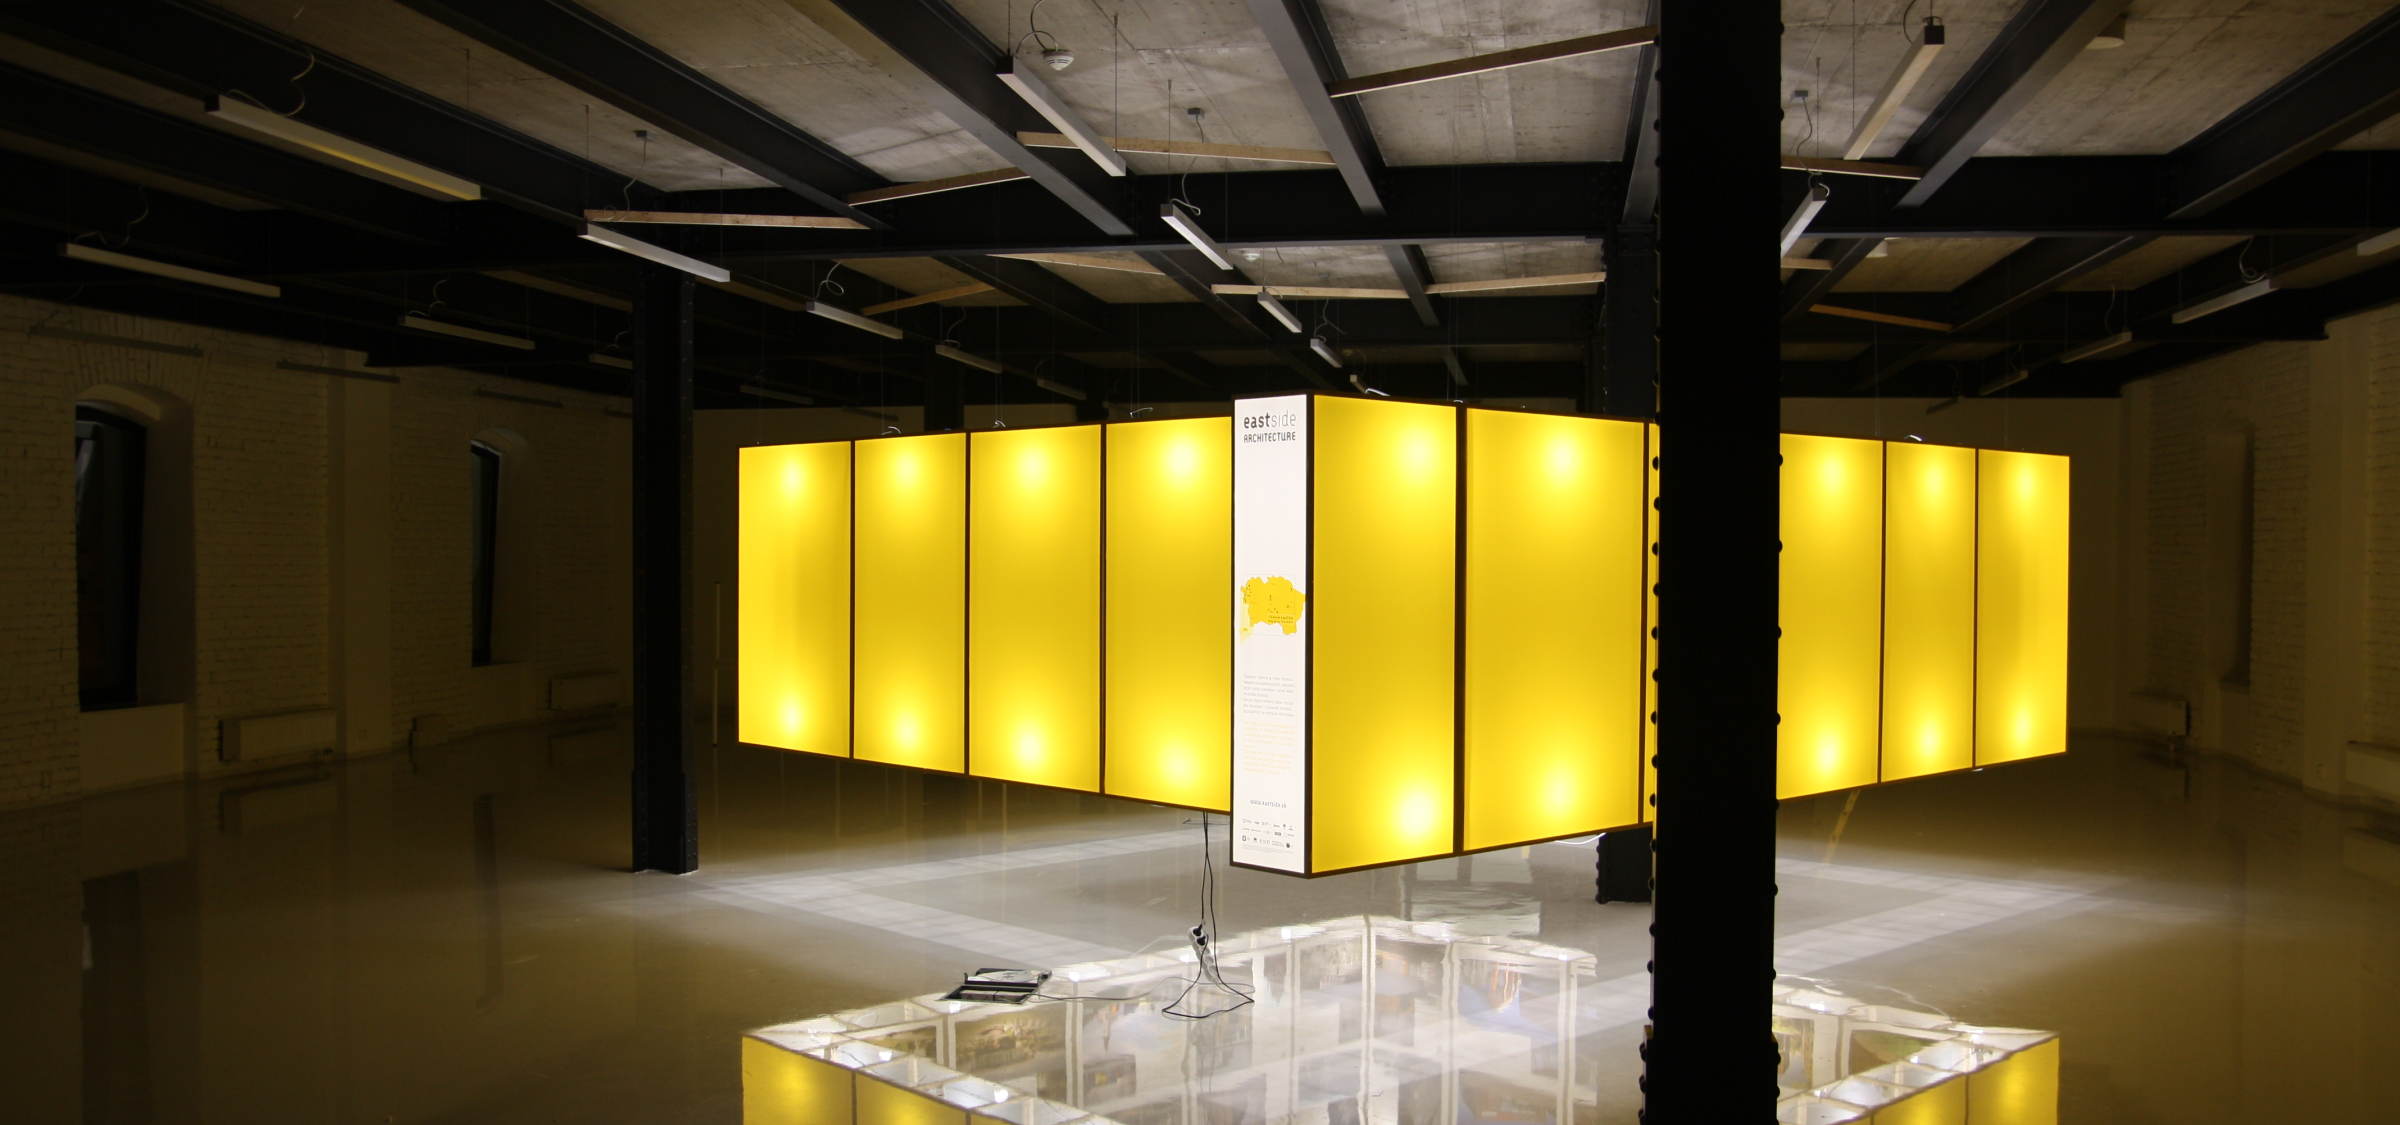 Opennig of exhibition in Košice Kulturpark | News | Atrium Architekti